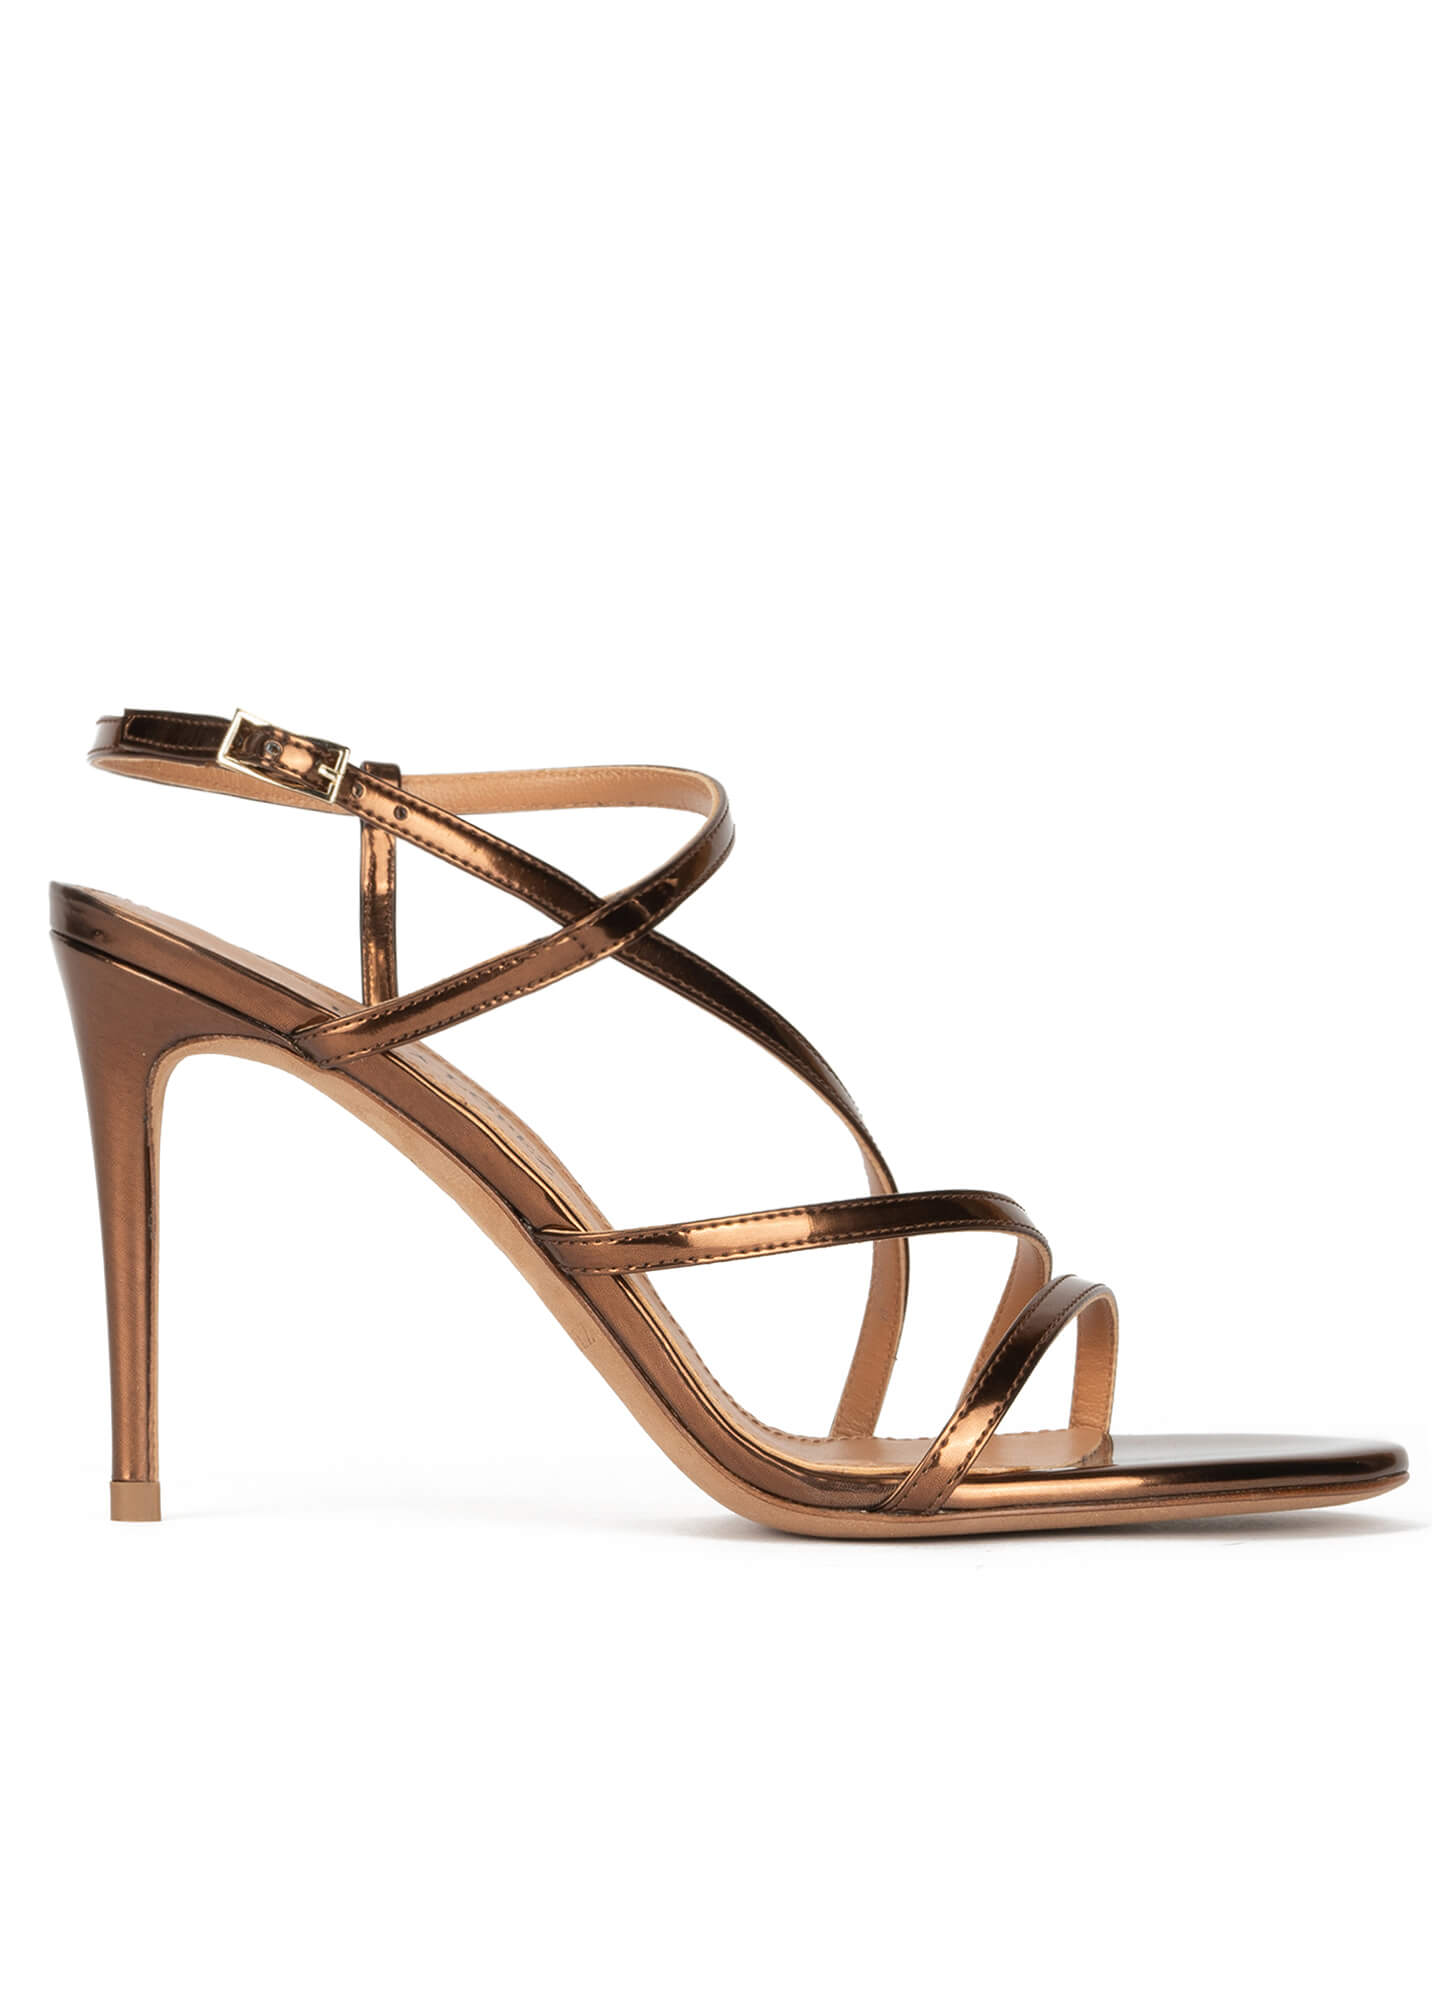 Bronze mid block heel sandals in metallic leather . PURA LOPEZ